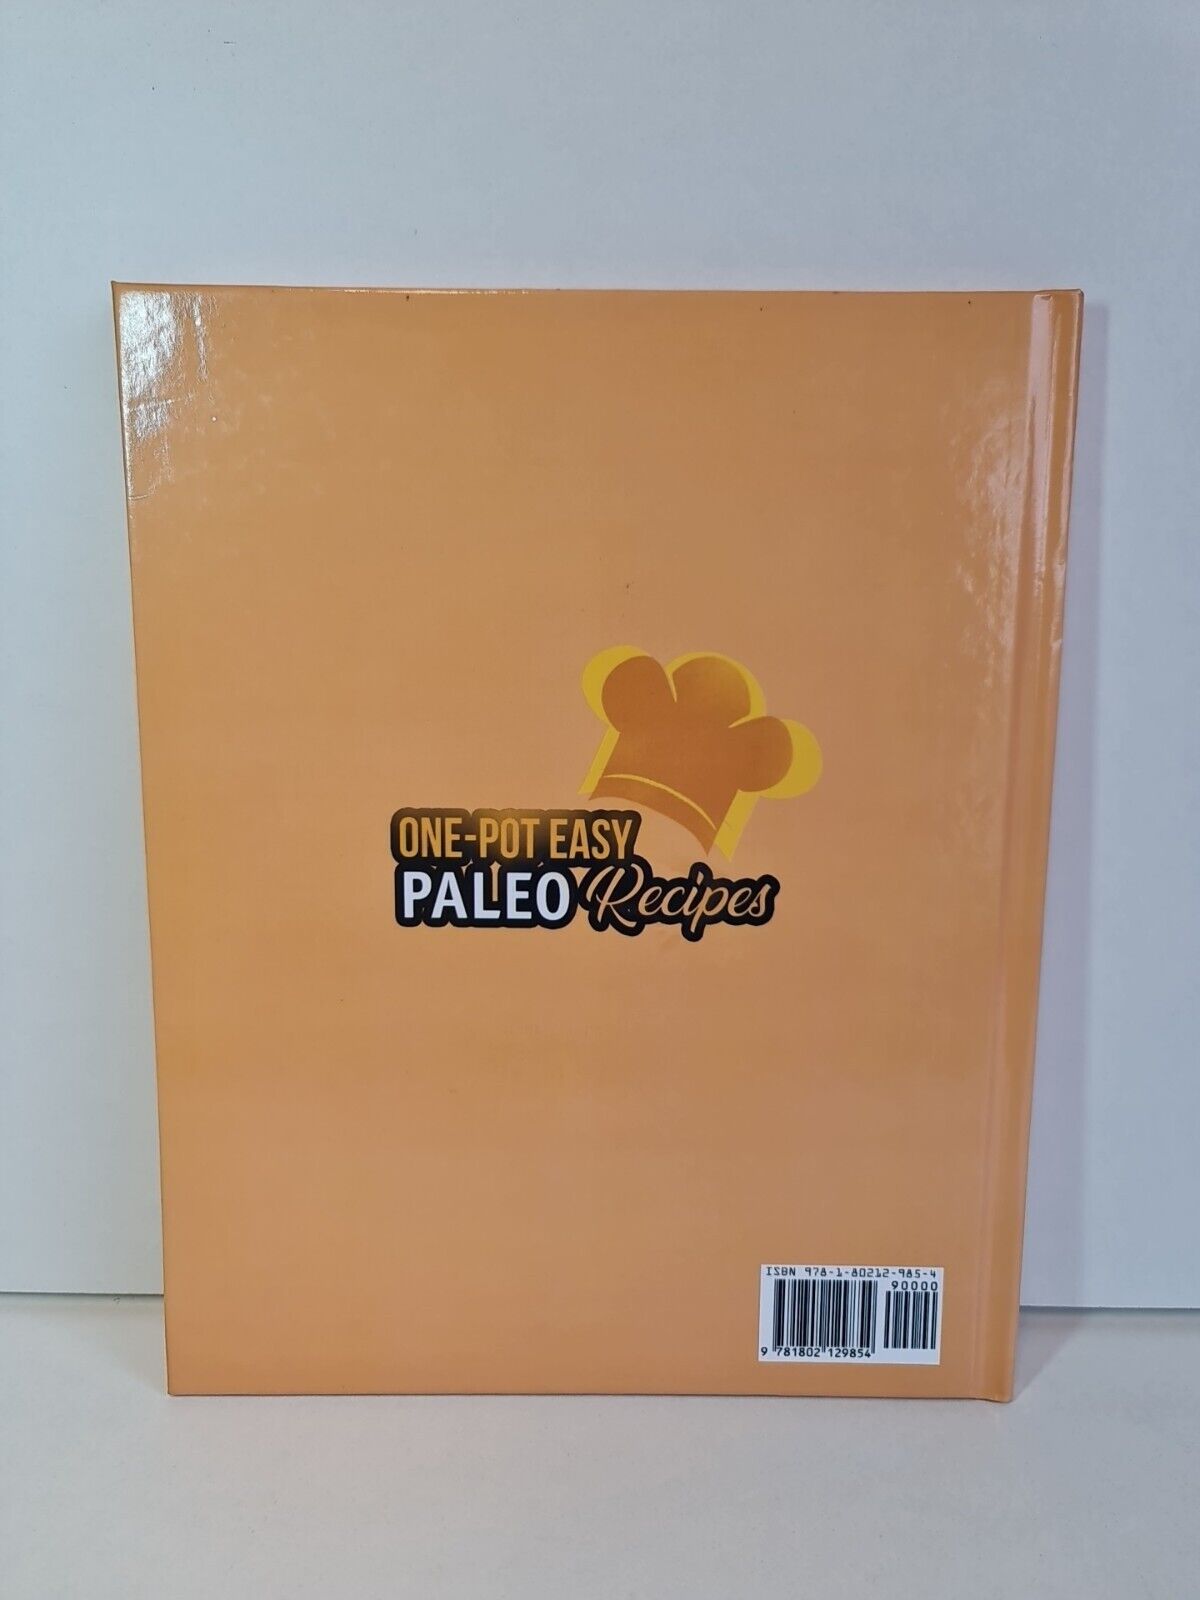 One-Pot Easy Paleo Recipes by Clarissa Williams (2021)